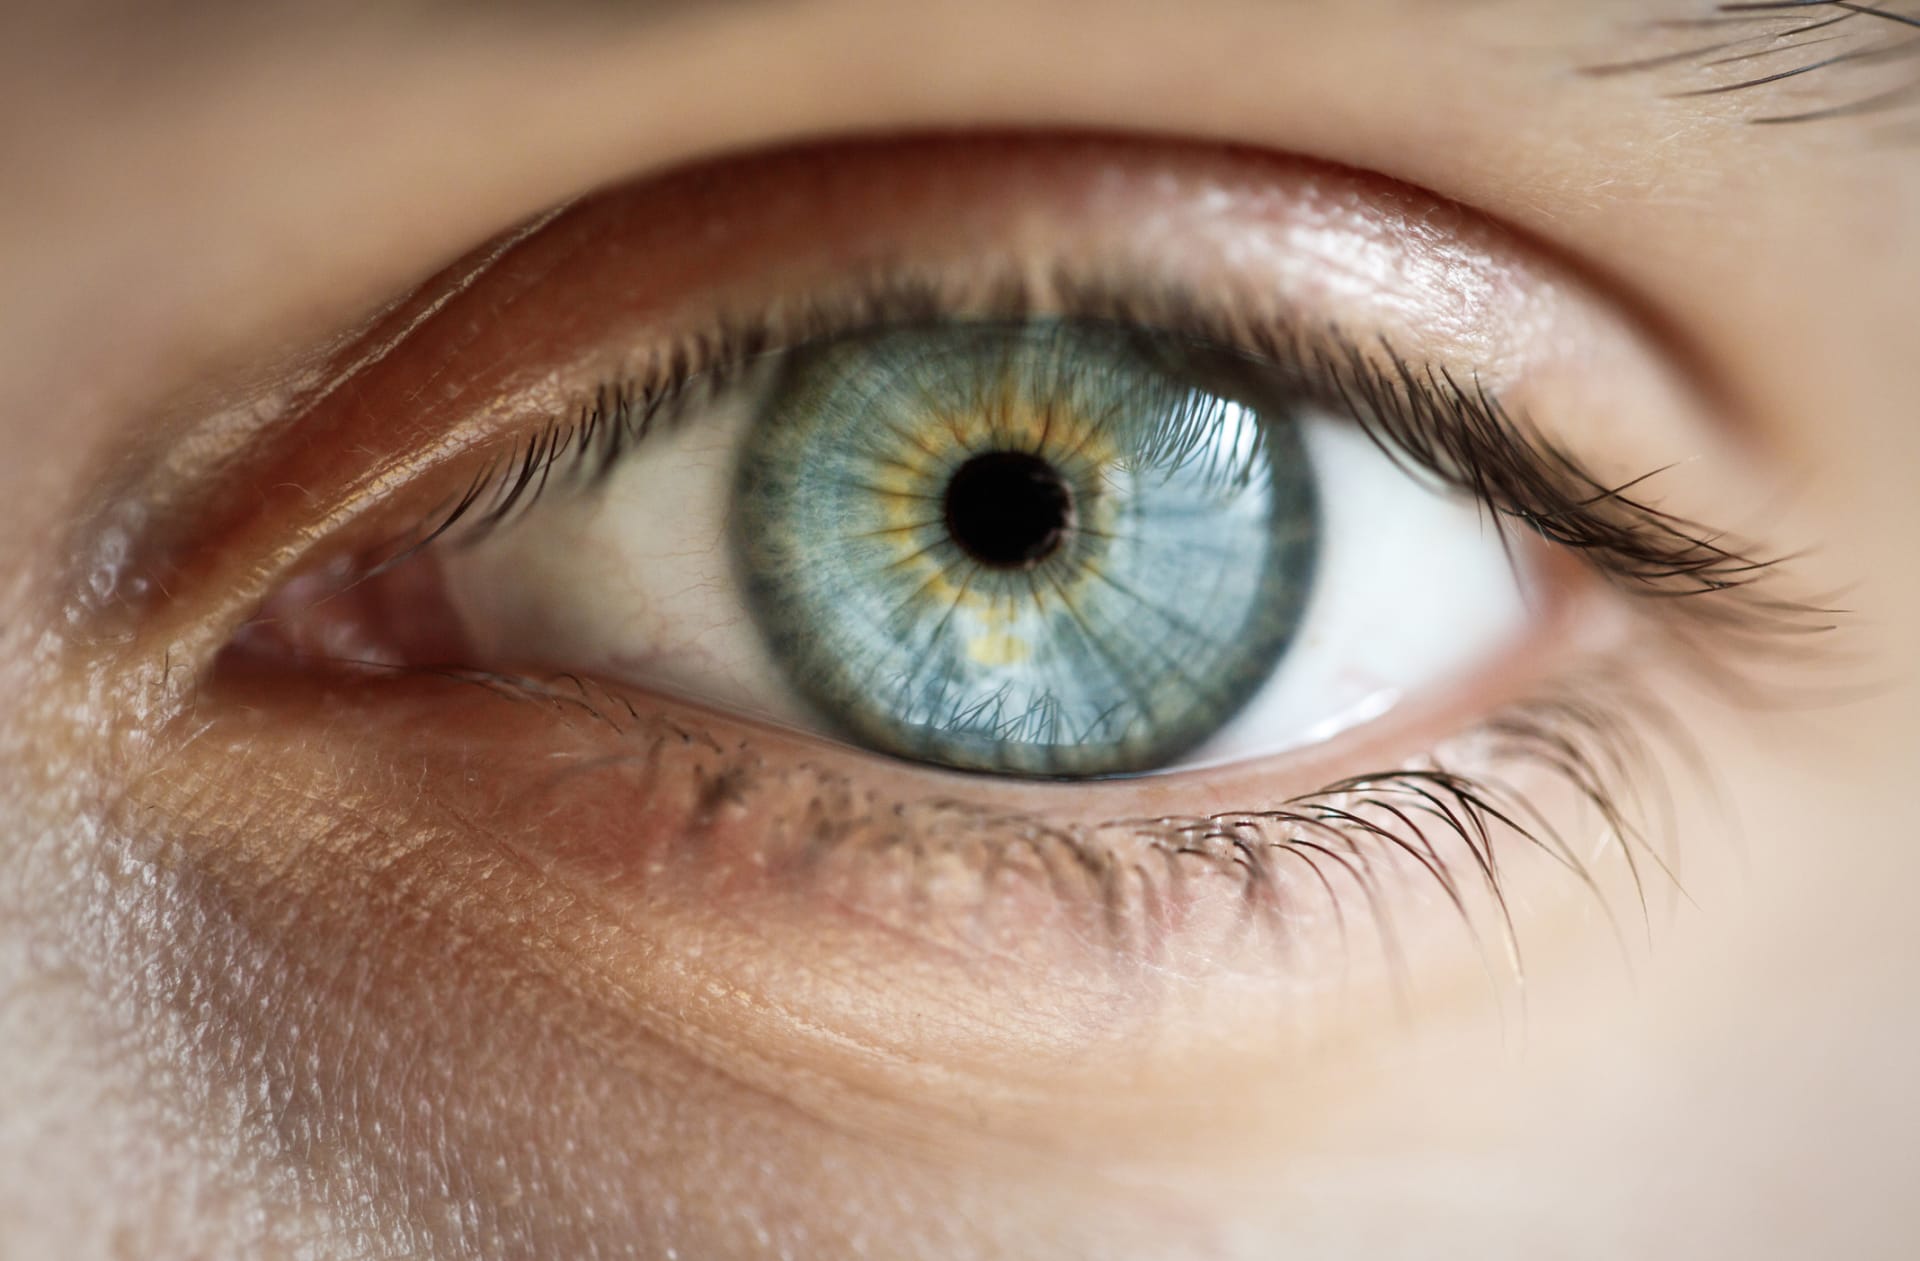 Vyvracíme mýty o zdraví: Na oči prevence neplatí!